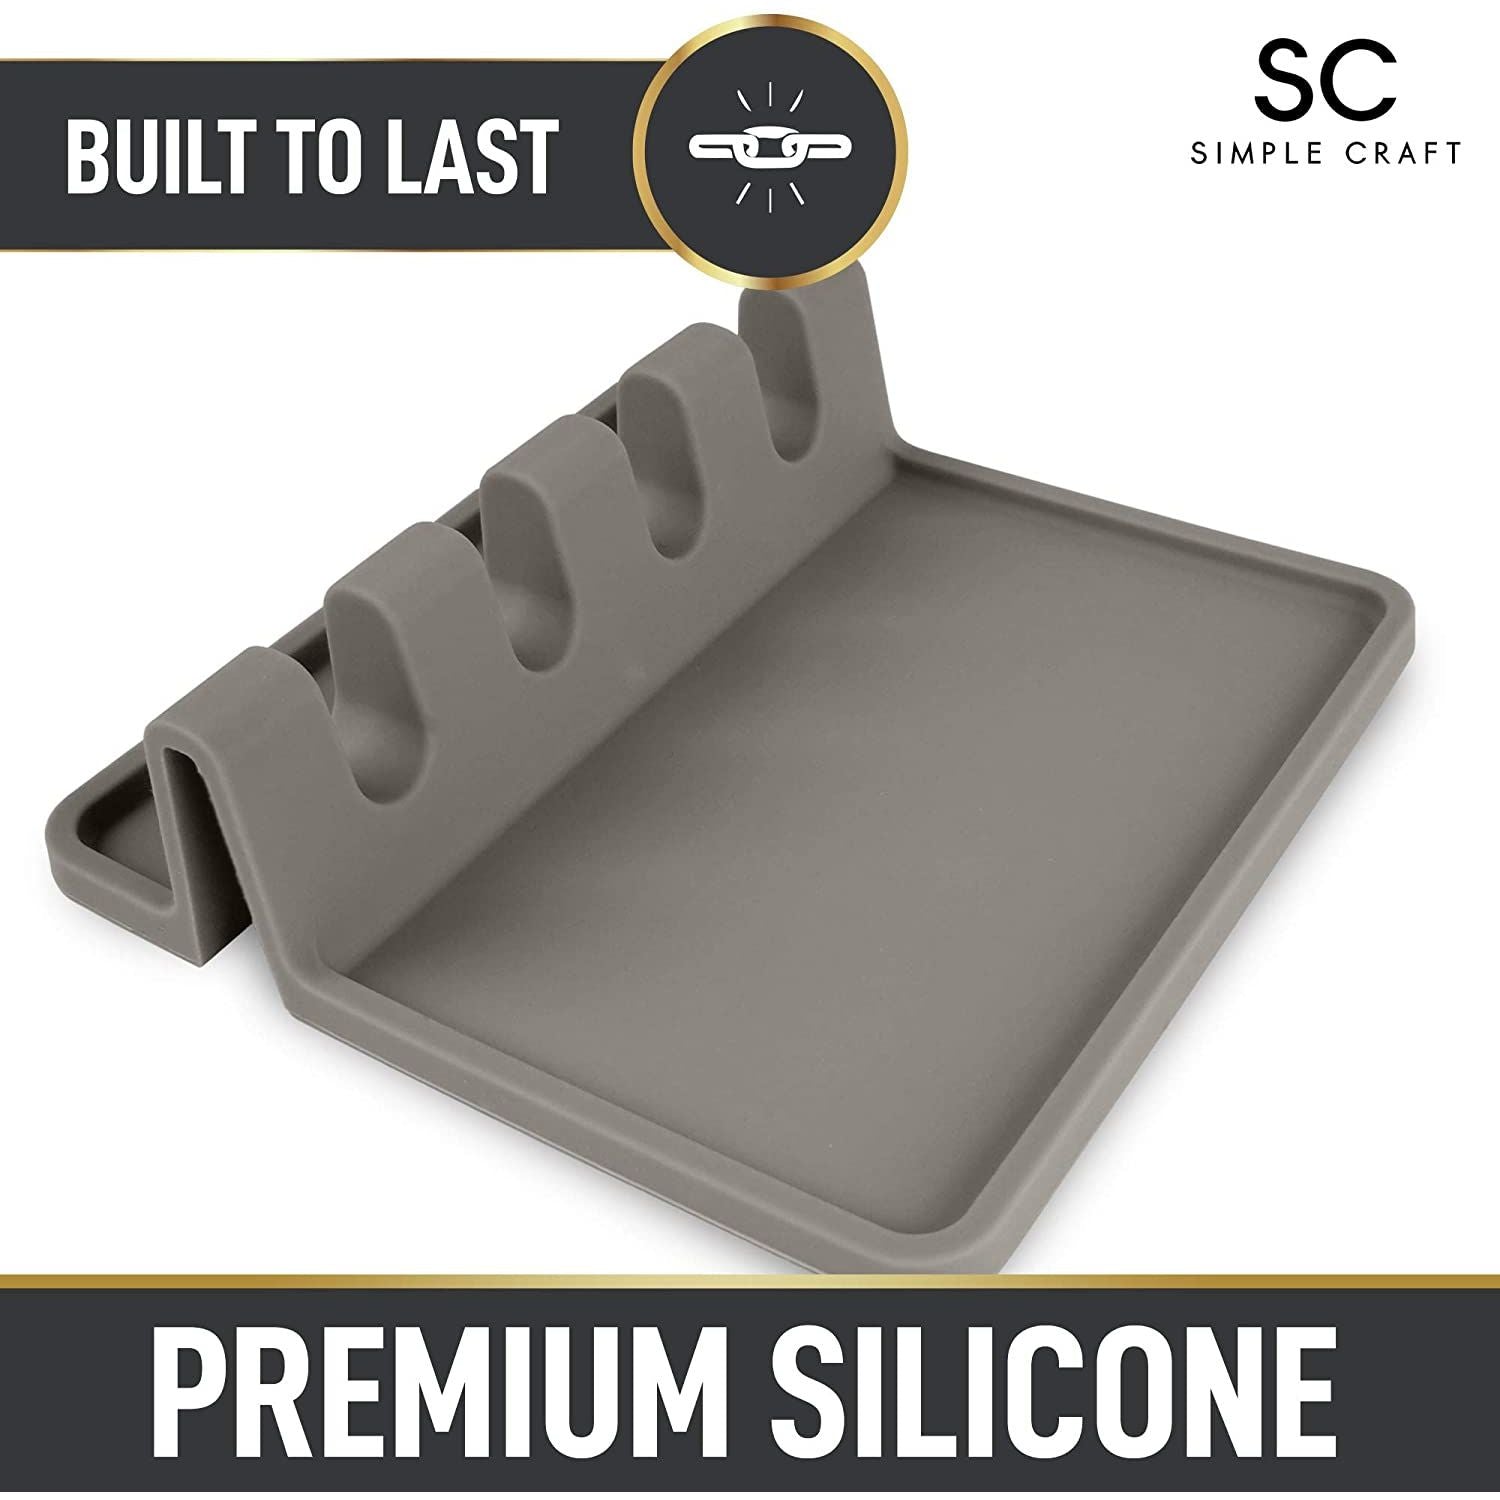 Premium Simple Craft Silicone Spoon Rest